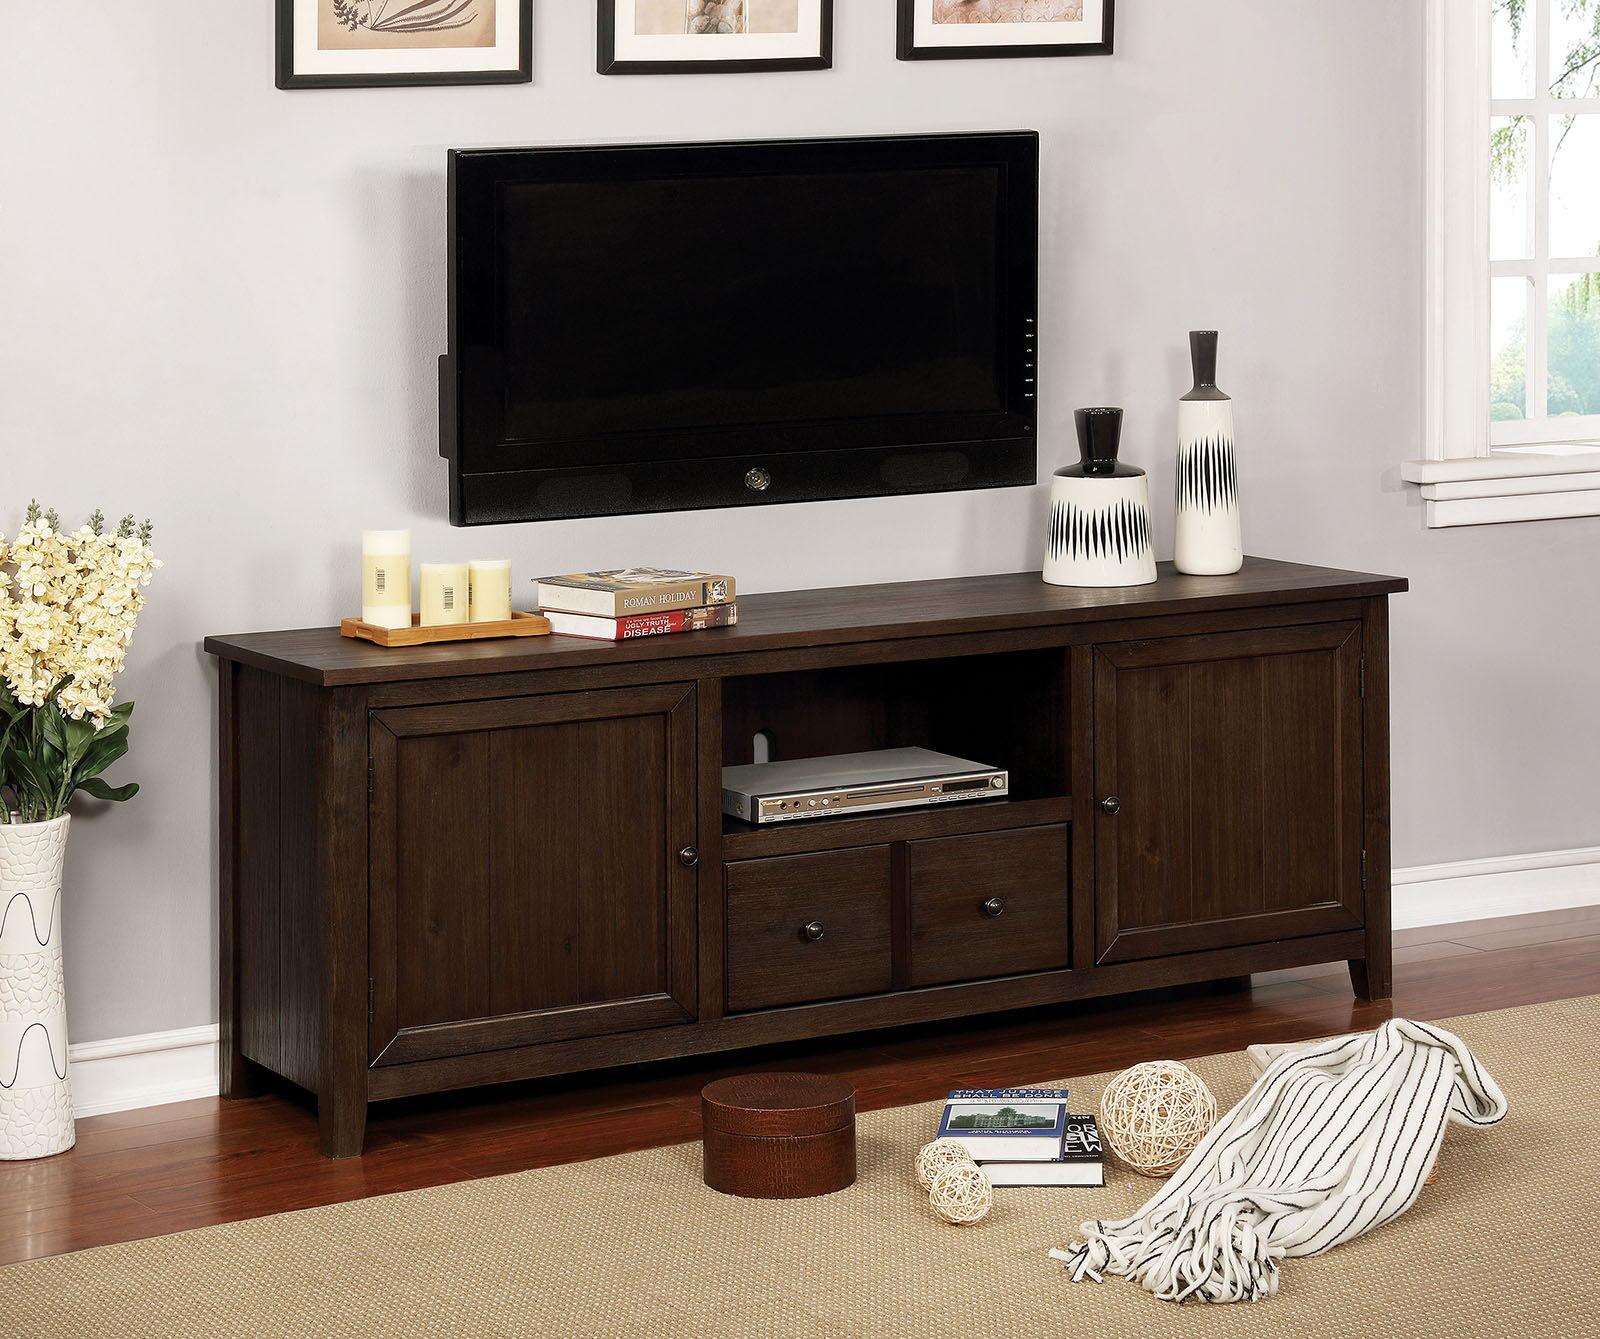 Furniture of America - Presho - TV Stand - Dark Oak - 5th Avenue Furniture